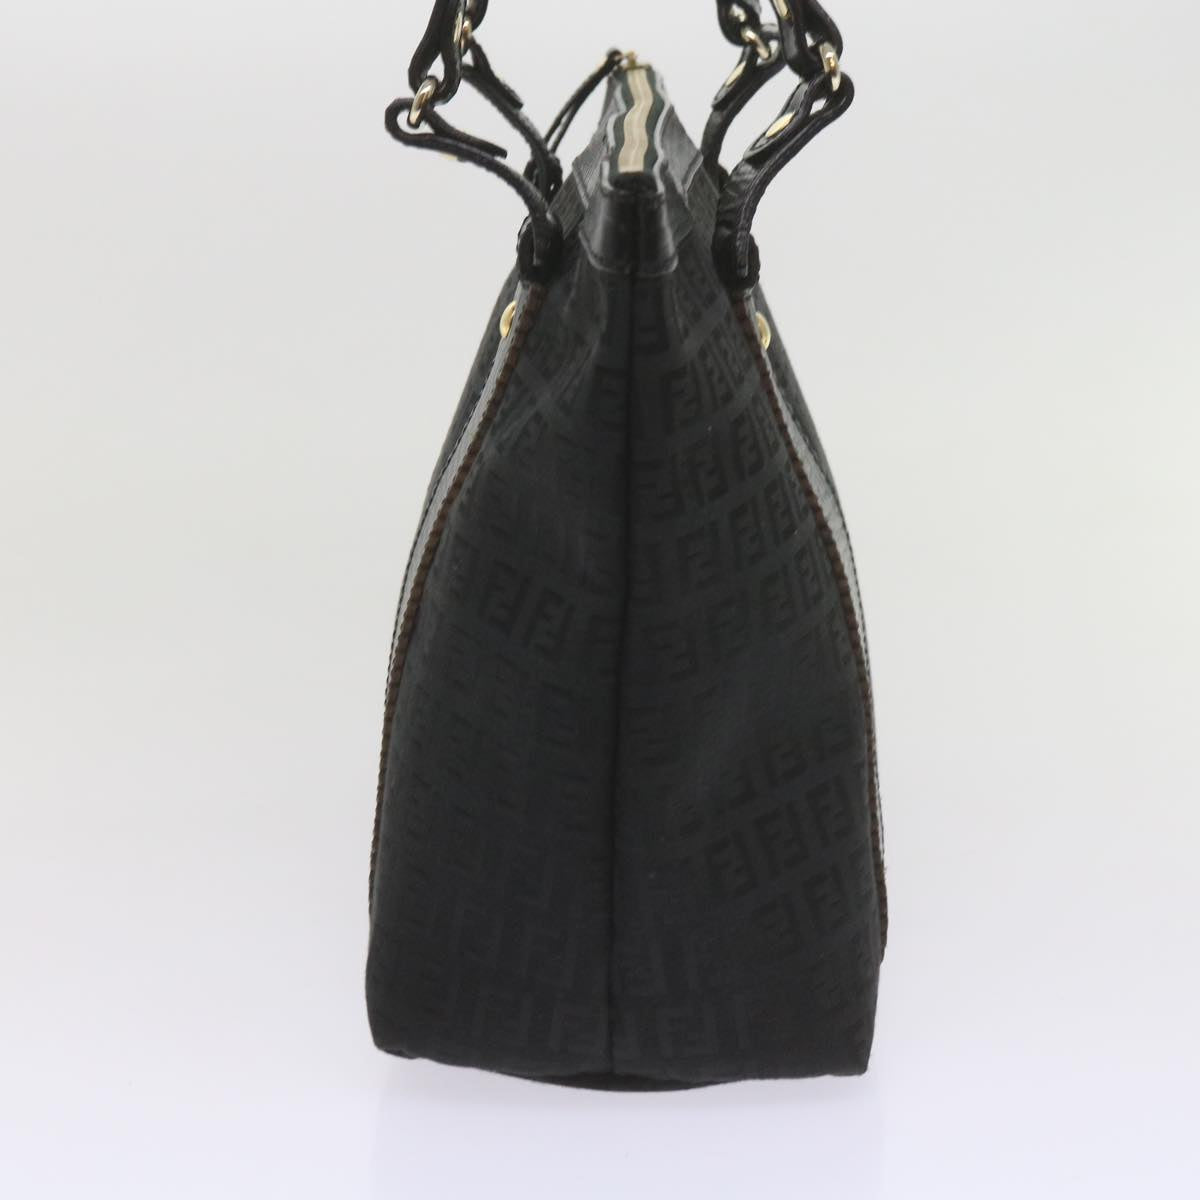 FENDI Zucchino Canvas Tote Bag Black Auth am5285